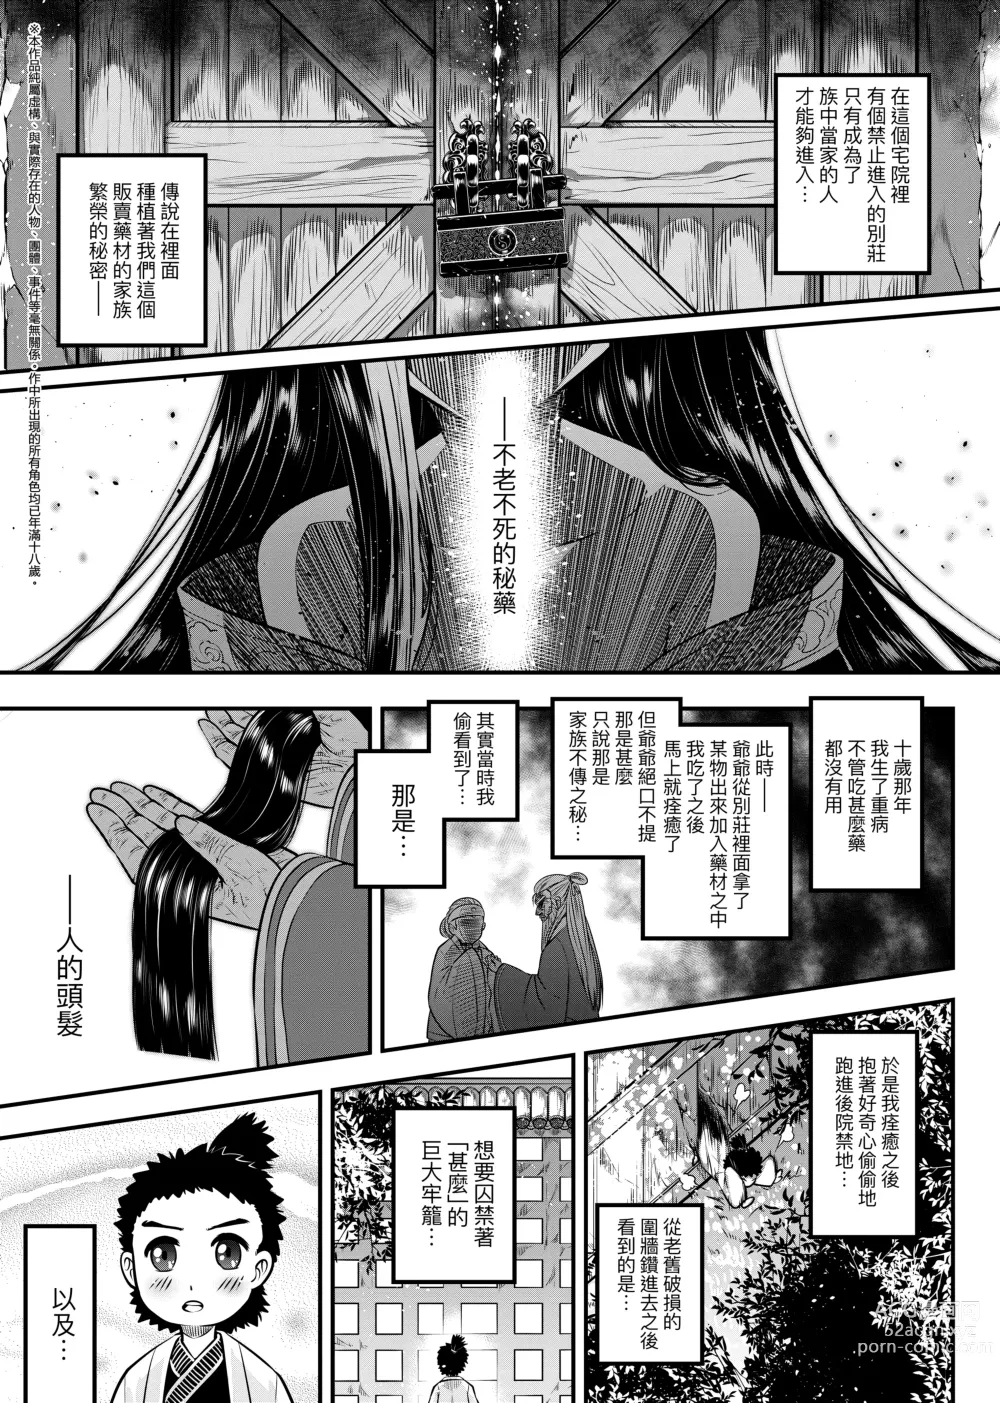 Page 6 of manga 永世流轉 (decensored)